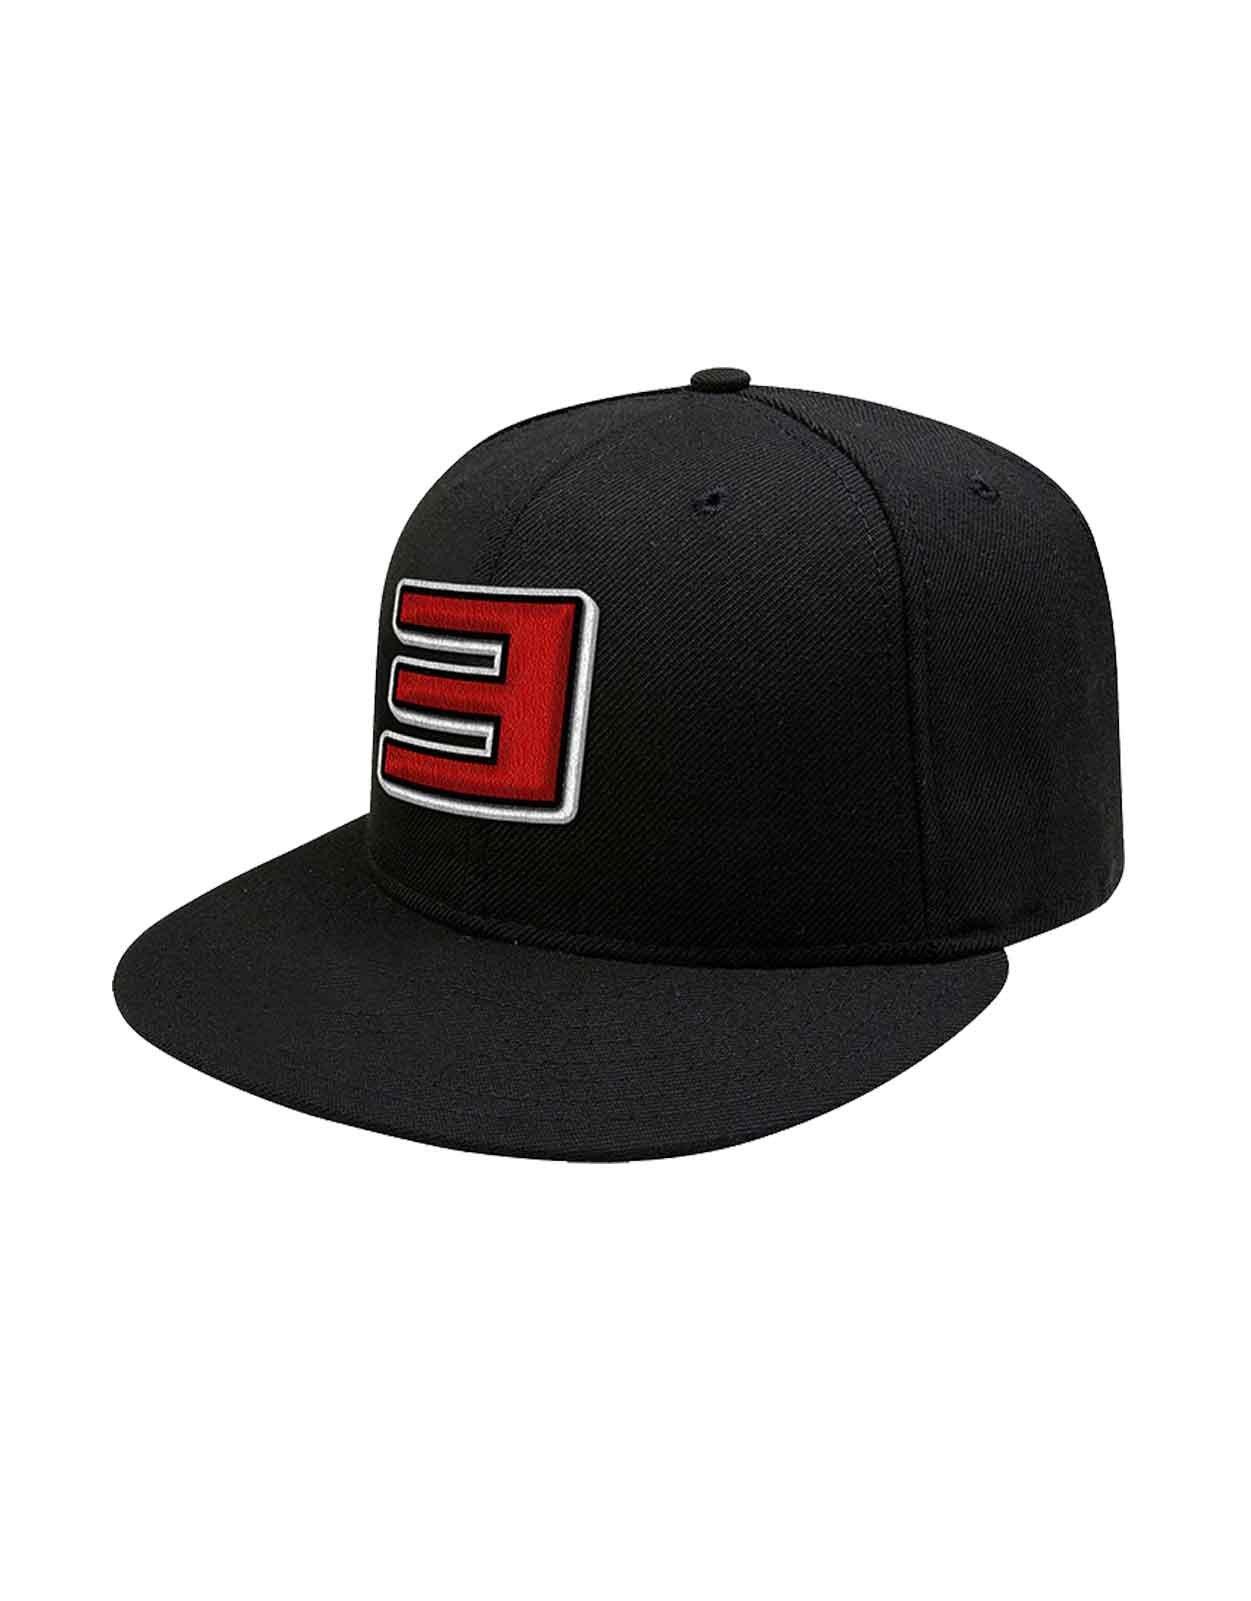 Бейсболка Snapback с тонким логотипом Shady Eminem, черный бейсболка virtus pro snapback atributika